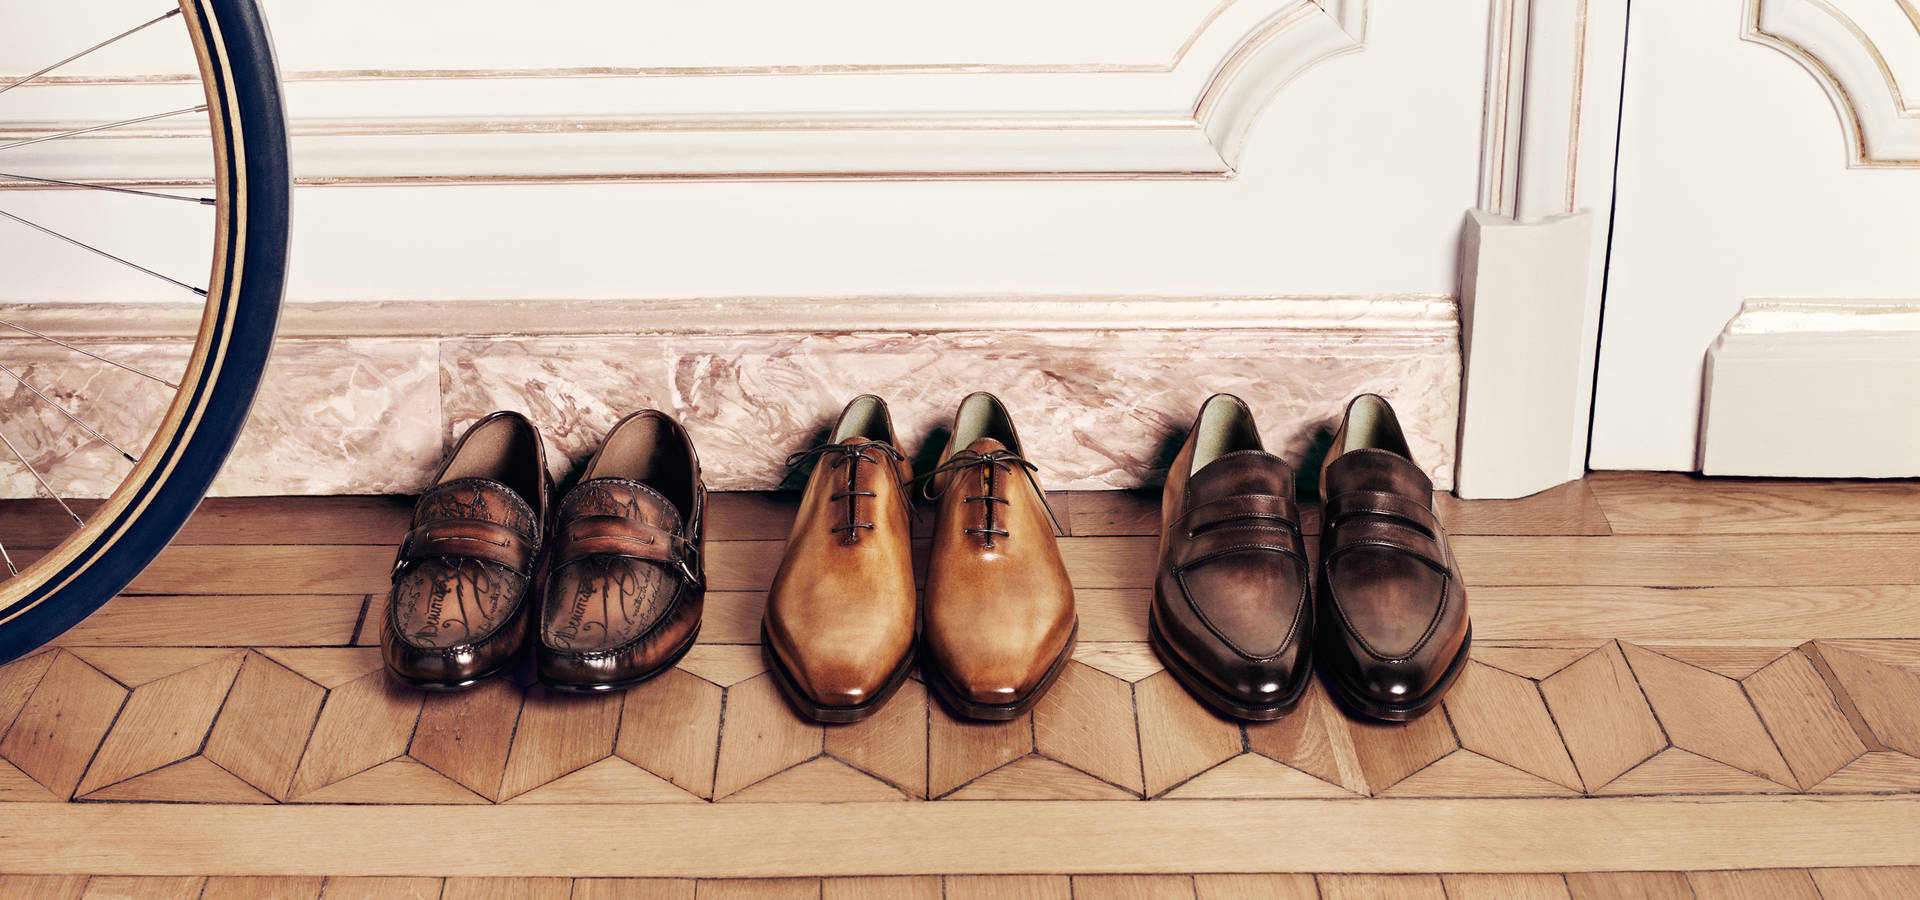 Elegant Berluti Men's Shoes on Display Wallpaper